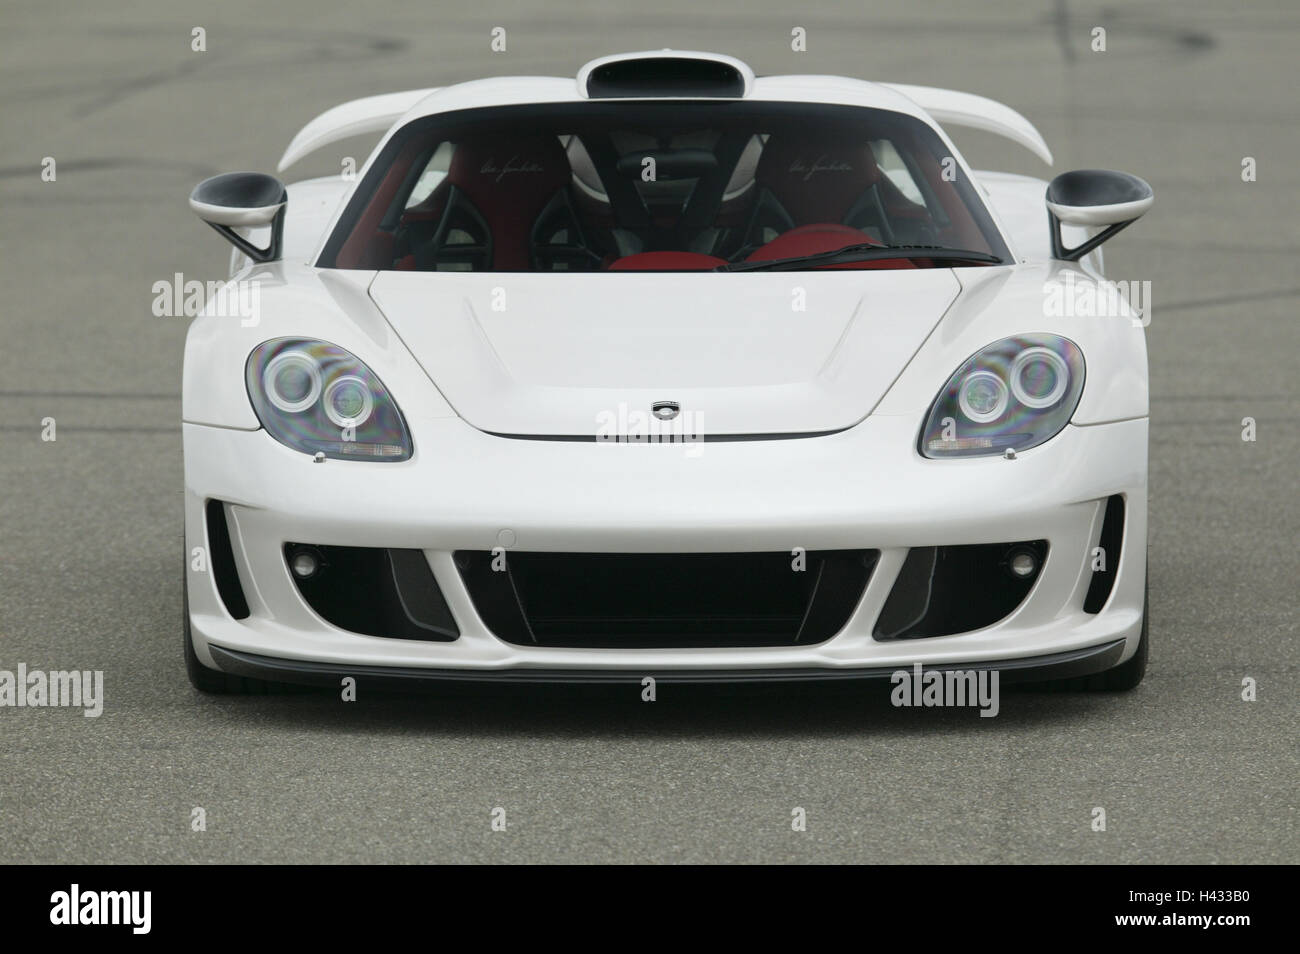 Gemballa Porsche 'Mirage GT', white, front view Stock Photo